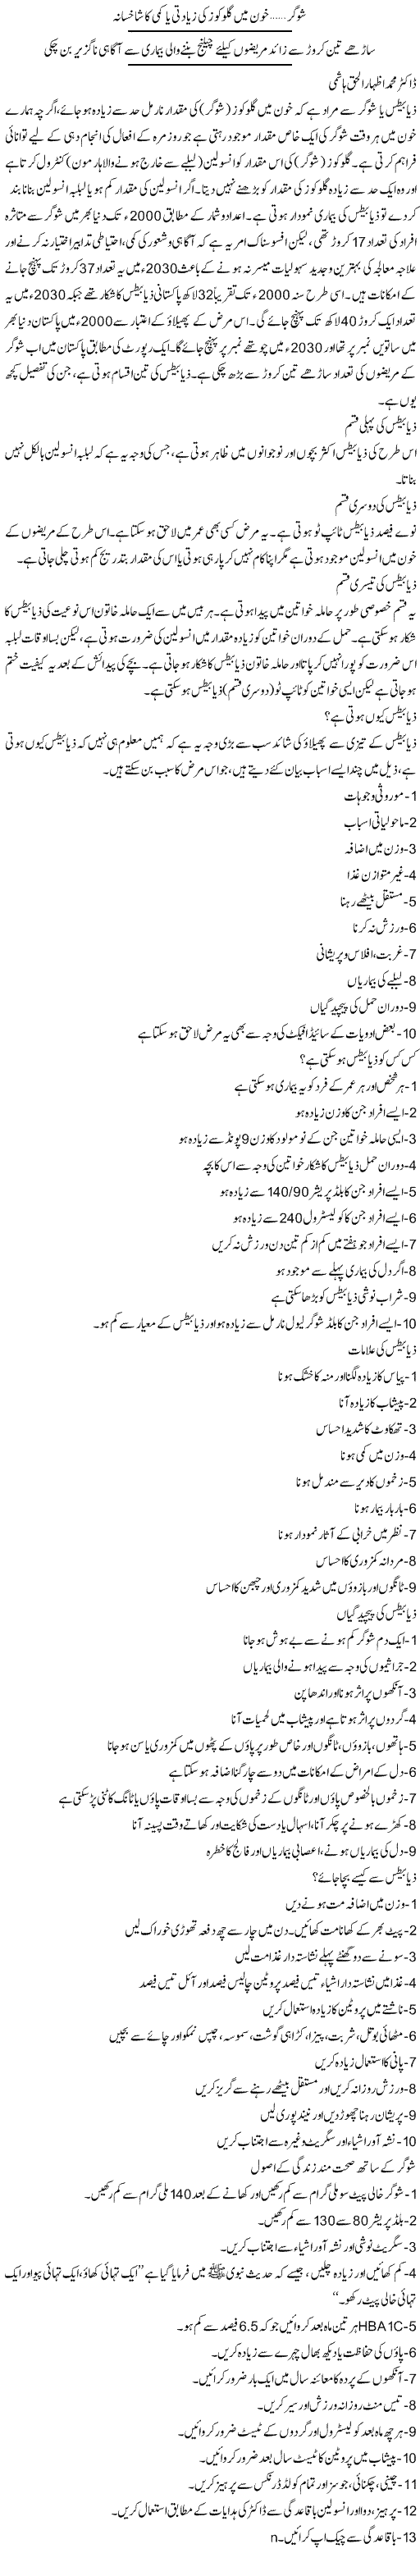 All About Diabetes Mellitus in Urdu & English Language 